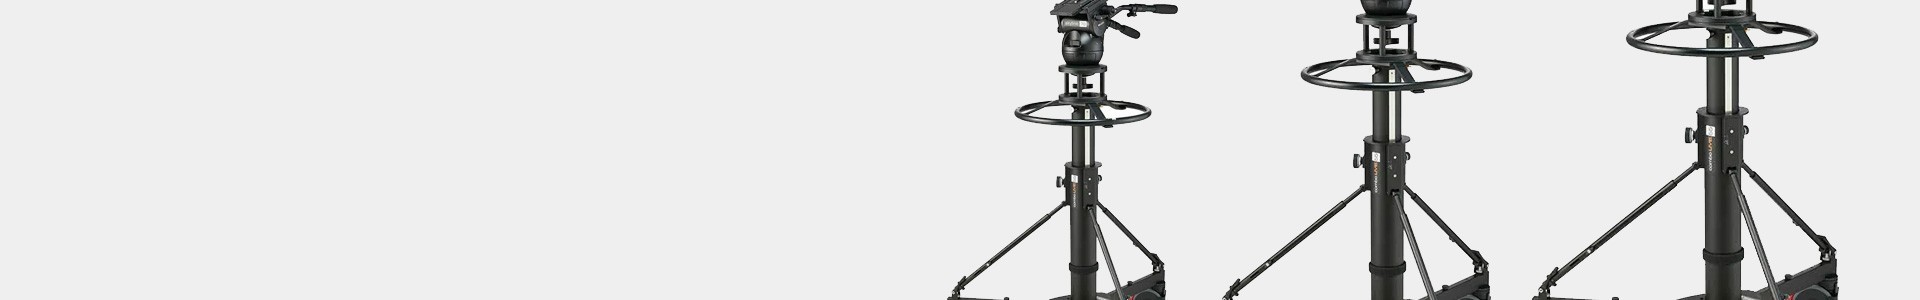 Pedestals for Studio and Cinema Cameras - Avacab